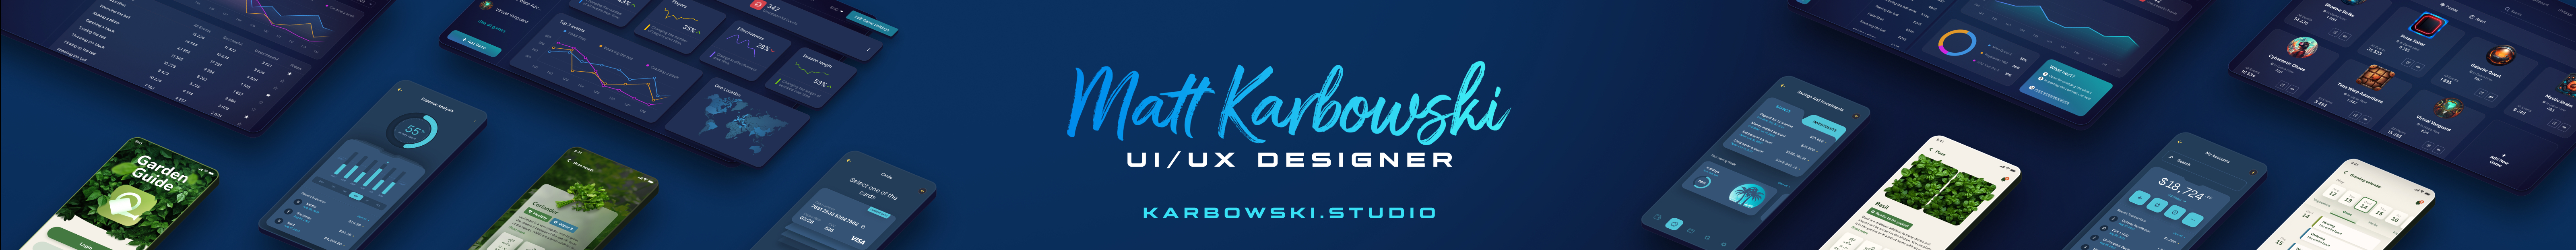 Matt Karbowski's profile banner